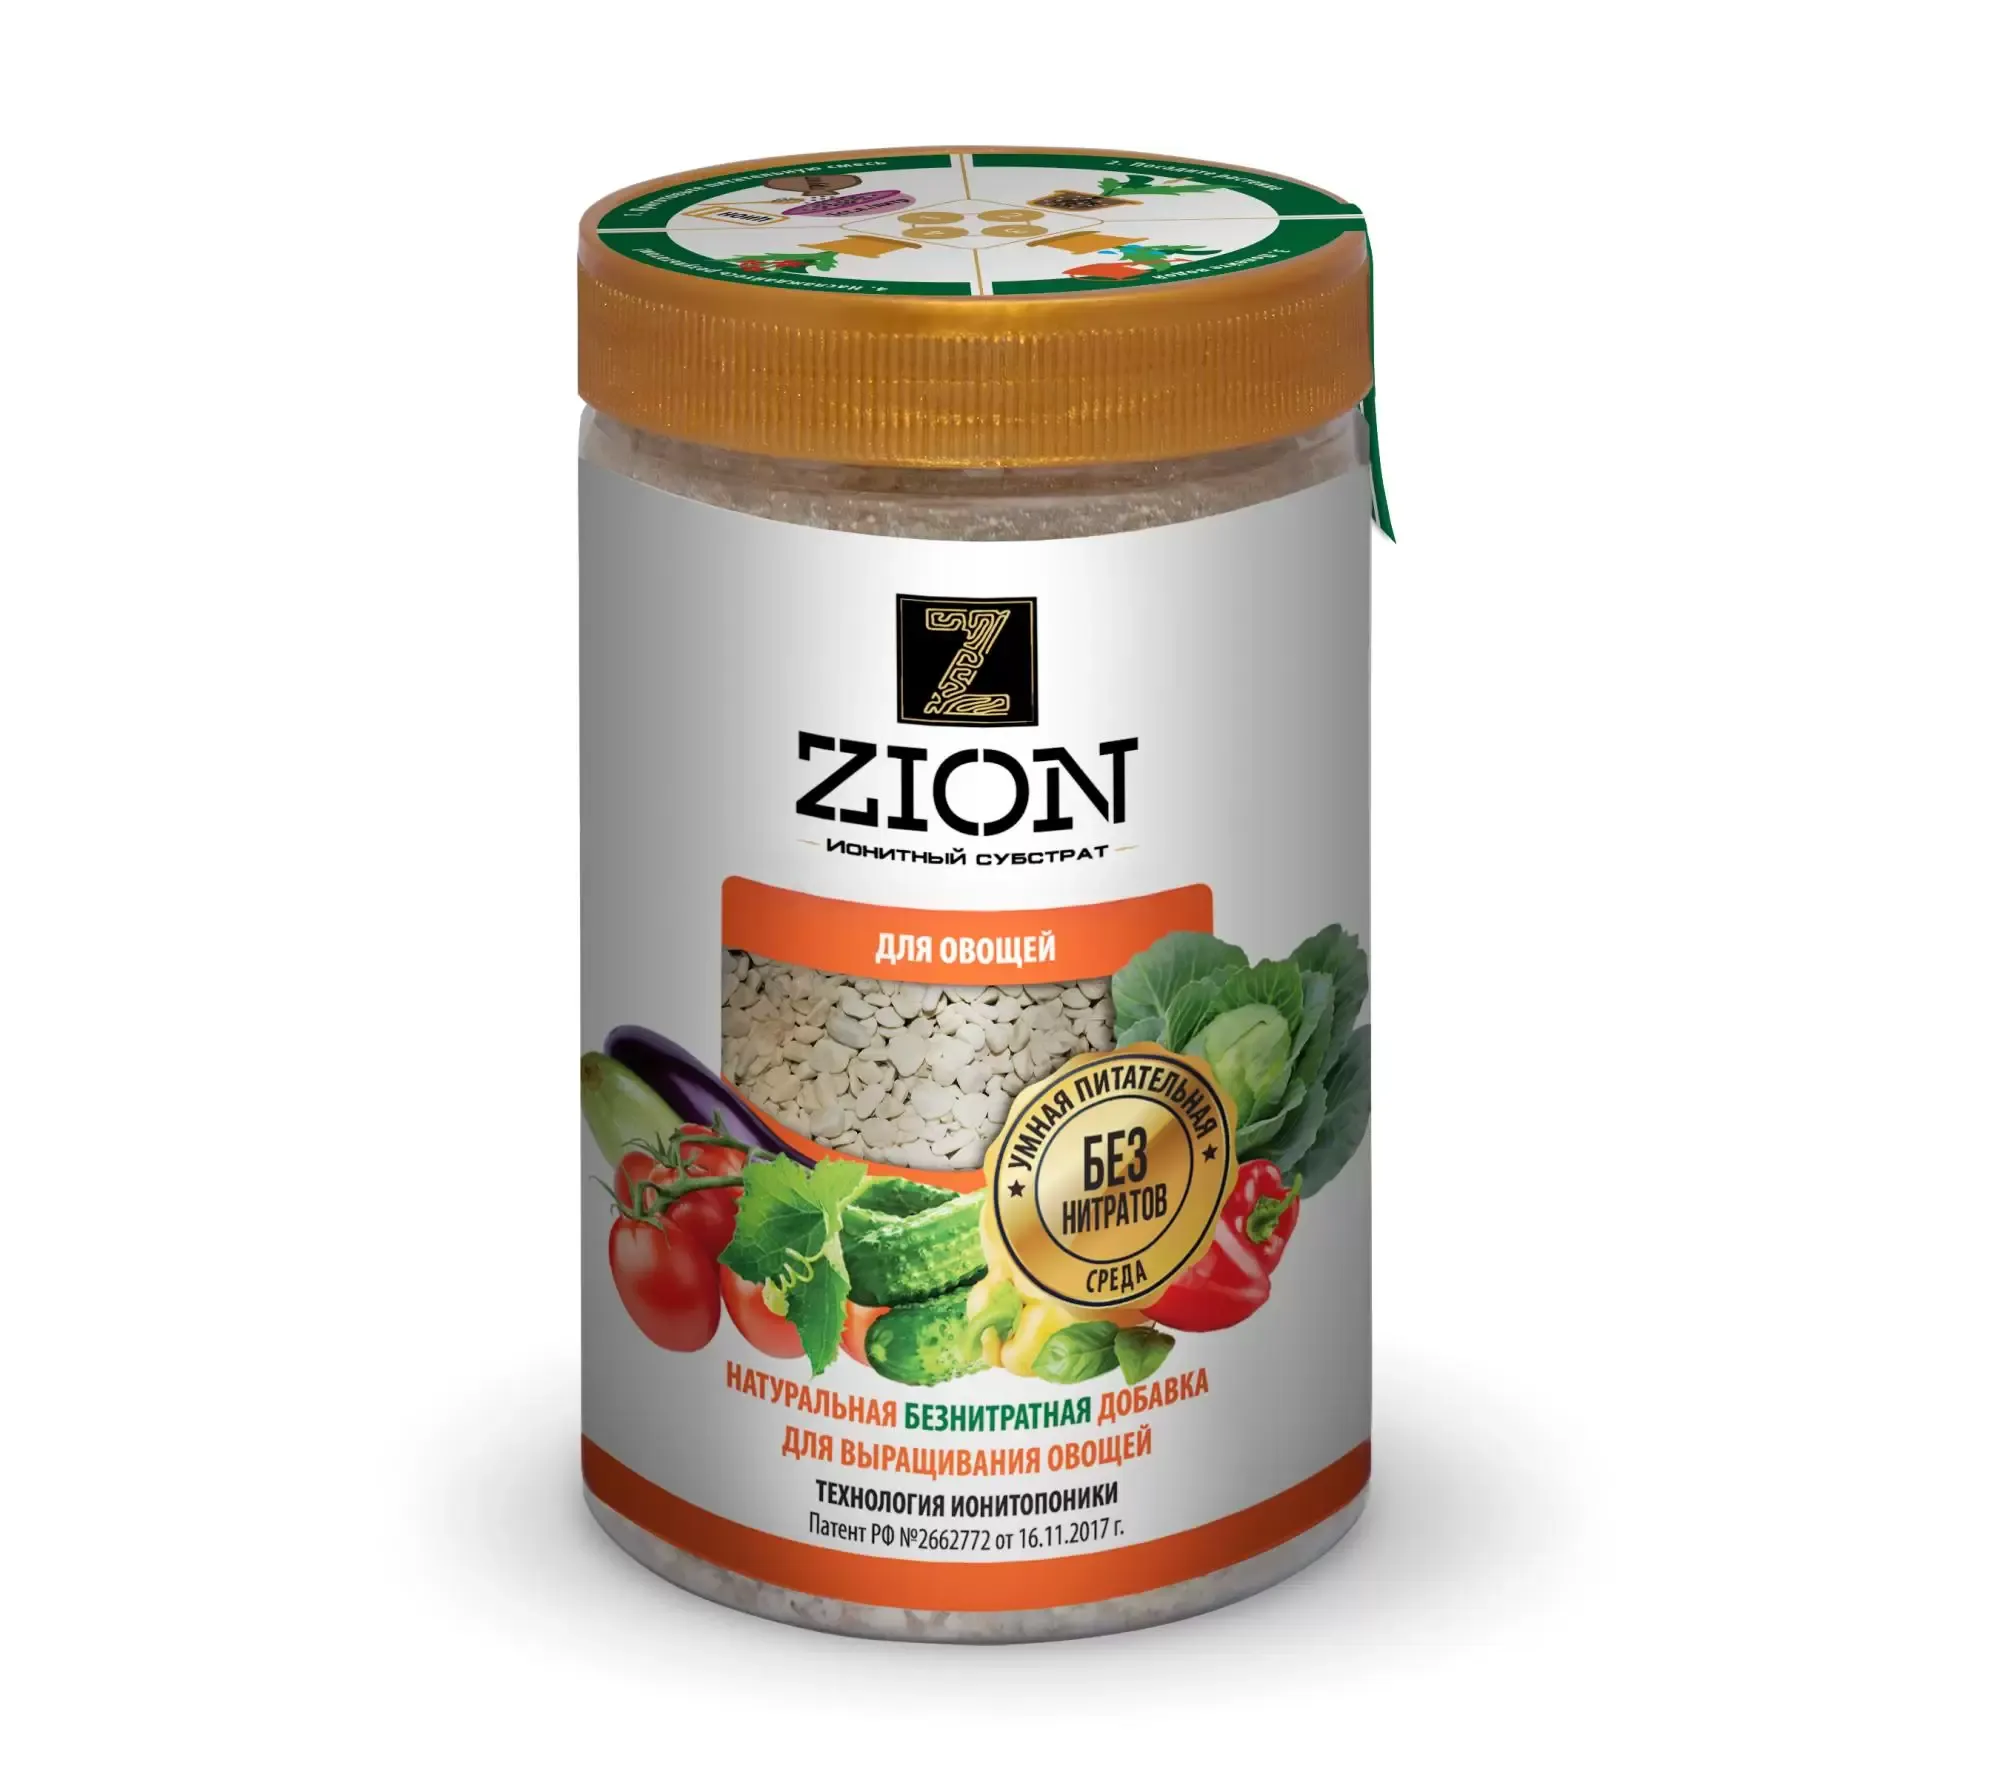 Питательная добавка ZION для овощей, 700 гр.